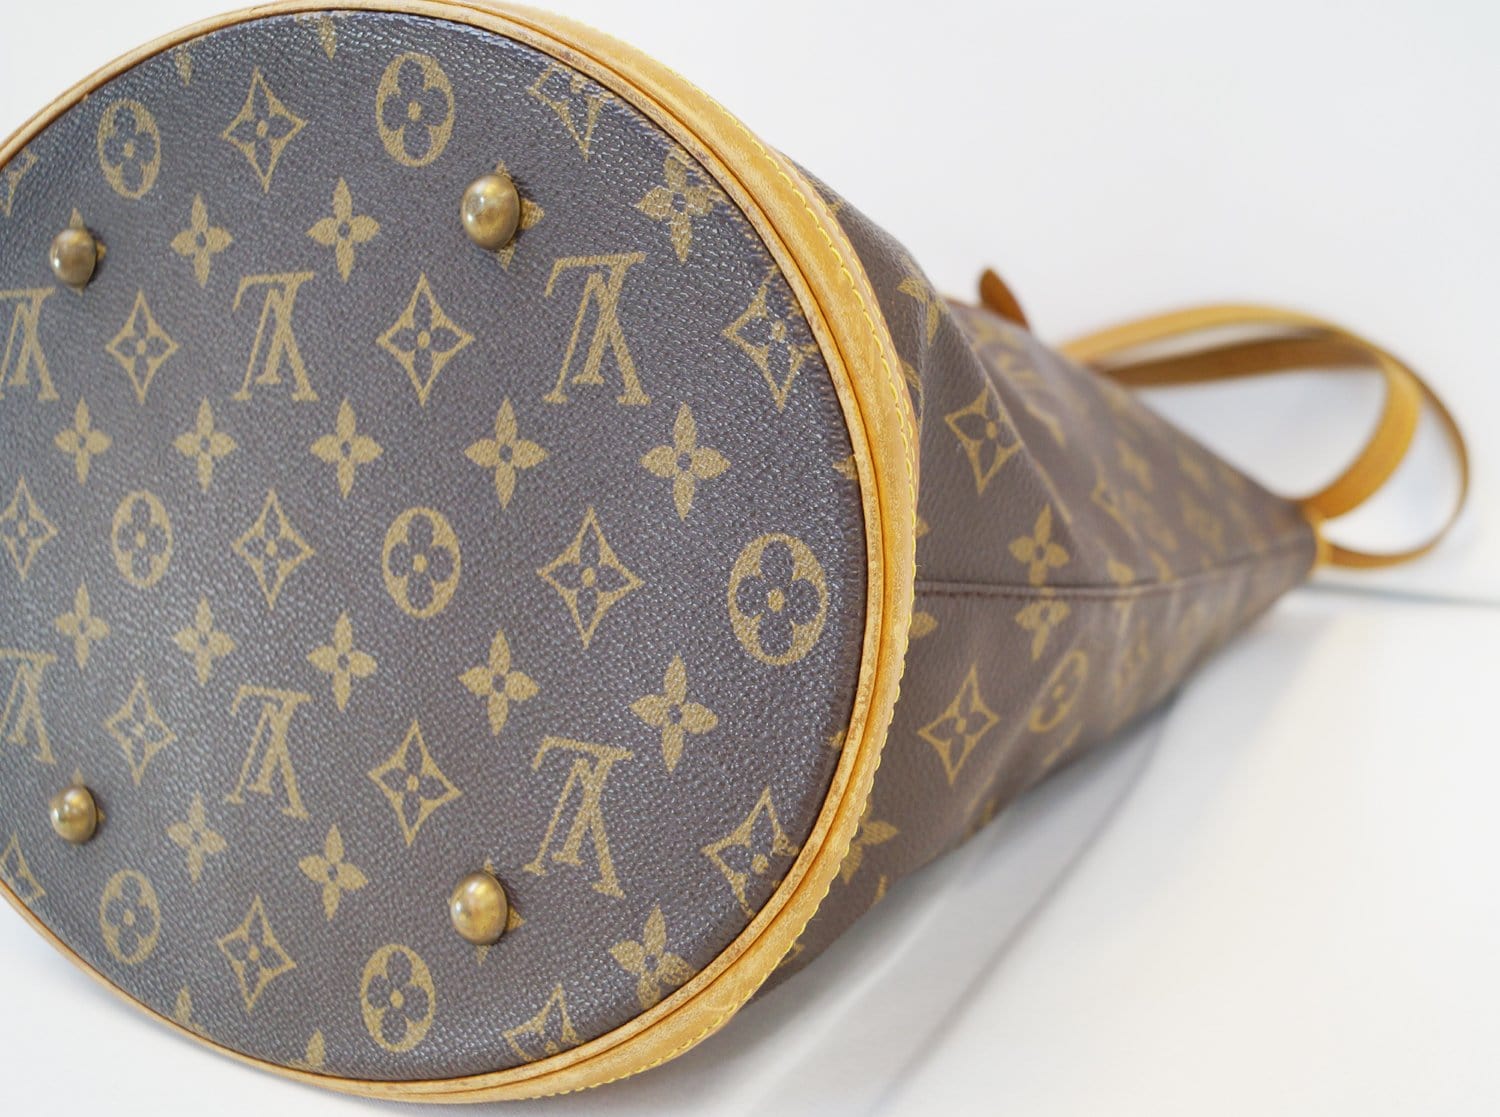 Bucket handbag Louis Vuitton Brown in Plastic - 31328342